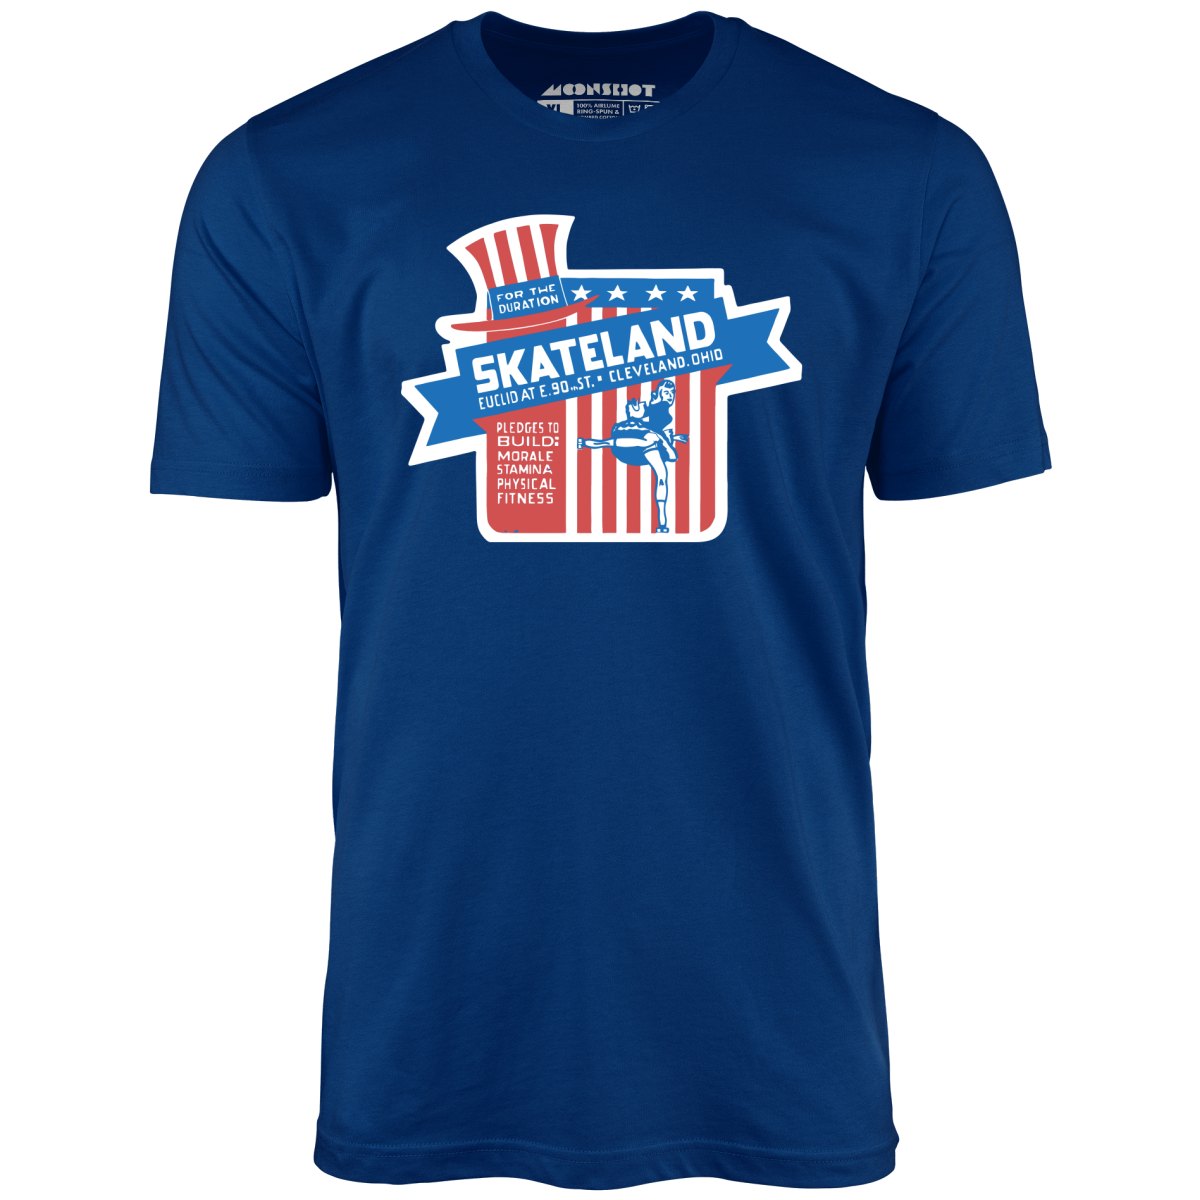 Skateland - Cleveland, OH - Vintage Roller Rink - Unisex T-Shirt